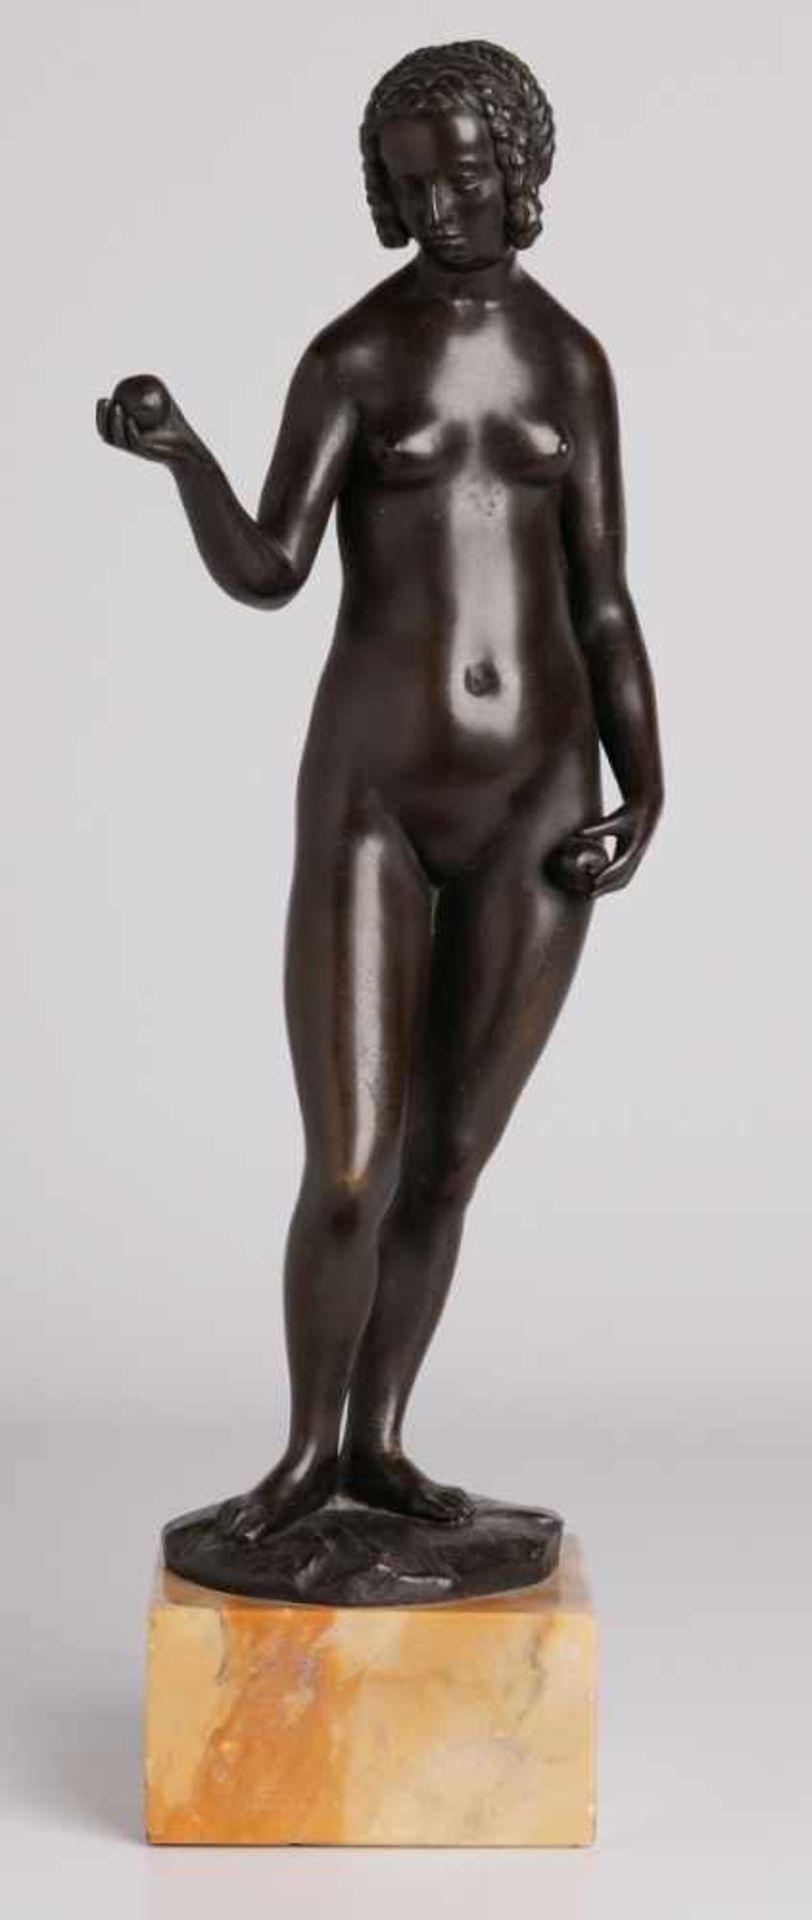 Bronze unleserl. sign.Weiblicher Akt mit Äpfeln, um 1900. Schwarz patiniert. Standfigur, eine Hand